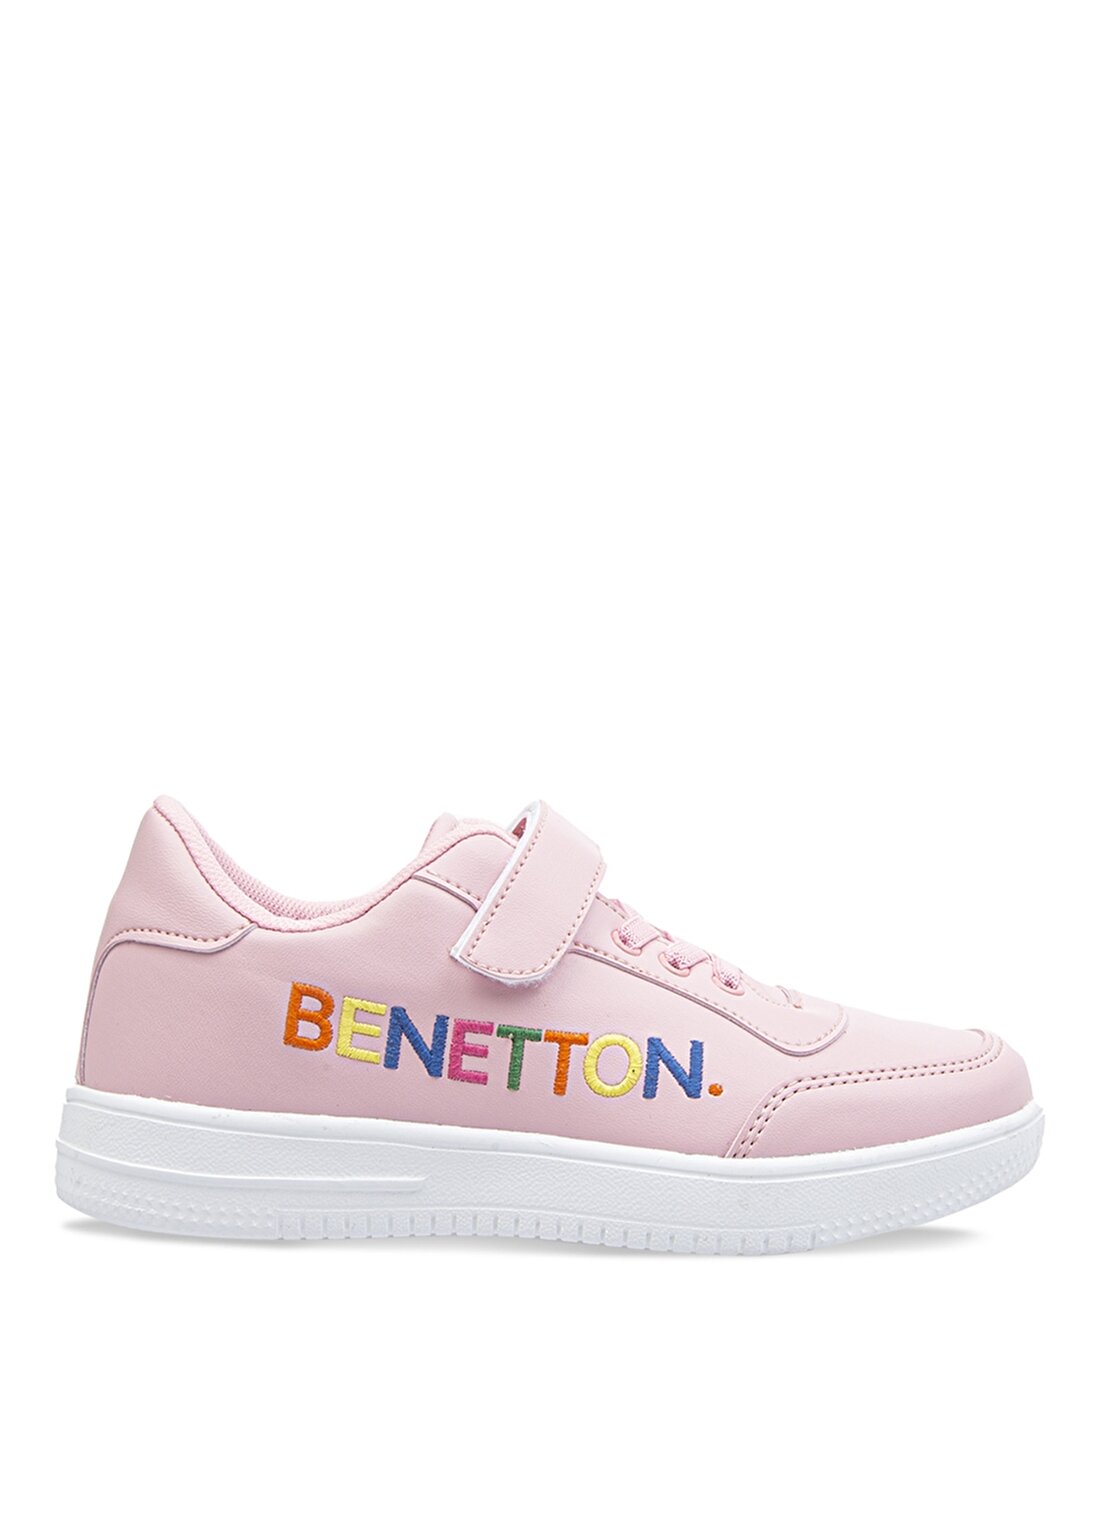 Benetton BN-30018 Düz Pembe Kız Çocuk Yürüyüş Ayakkabısı